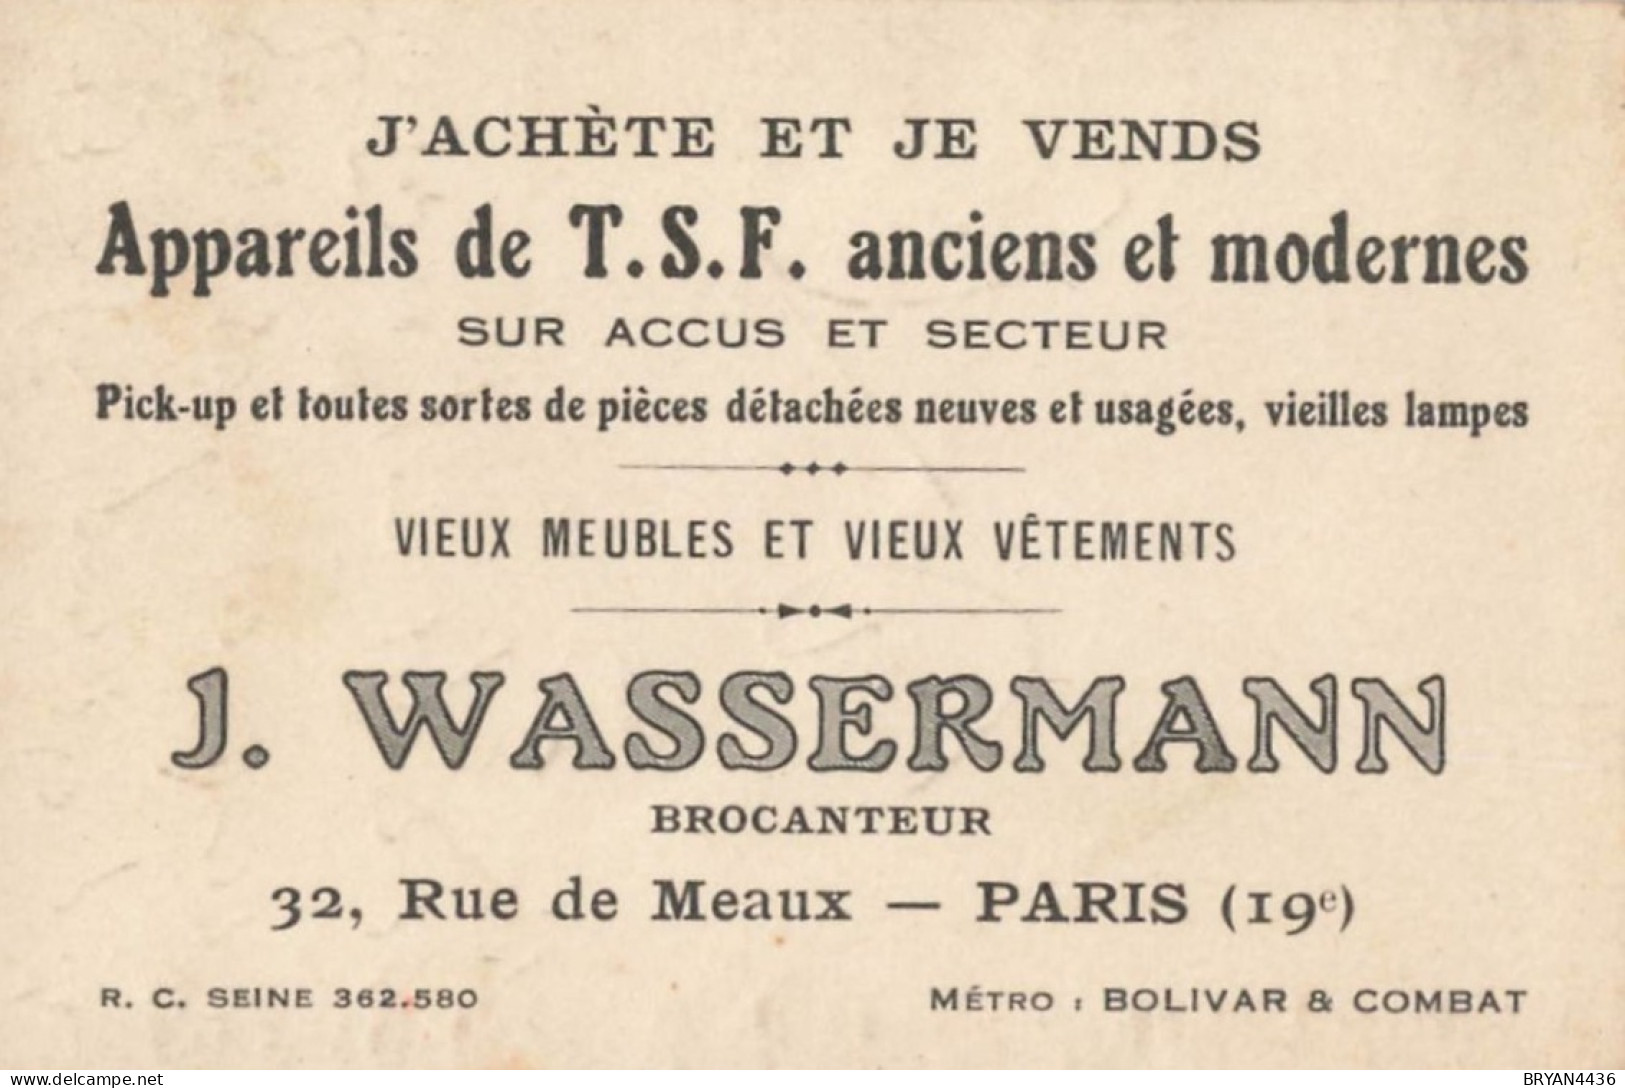 PARIS - 19 ème - BROCANTEUR  - J. WASSEMANN - 32, RUE De MEAUX - CARTE COMMERCIALE ANCIENNE - (7x10,5cm) - Arrondissement: 19